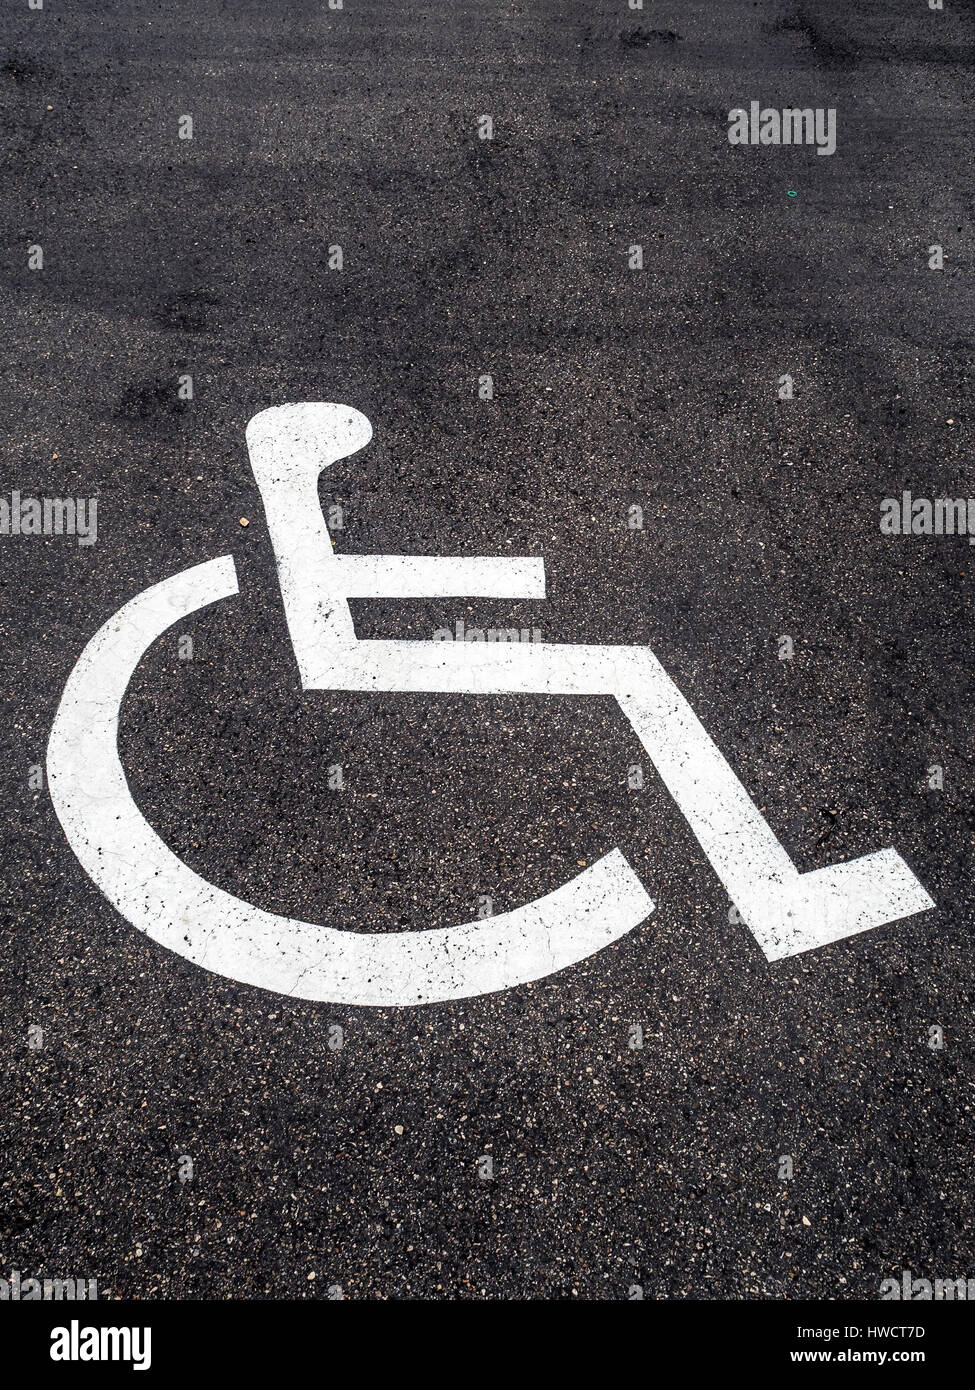 Una sedia a rotelle si trova proprio su una baia di parcheggio per disabili., Ein Rollstuhl ist auf einem Parkplatz für Behinderte angebracht. Foto Stock